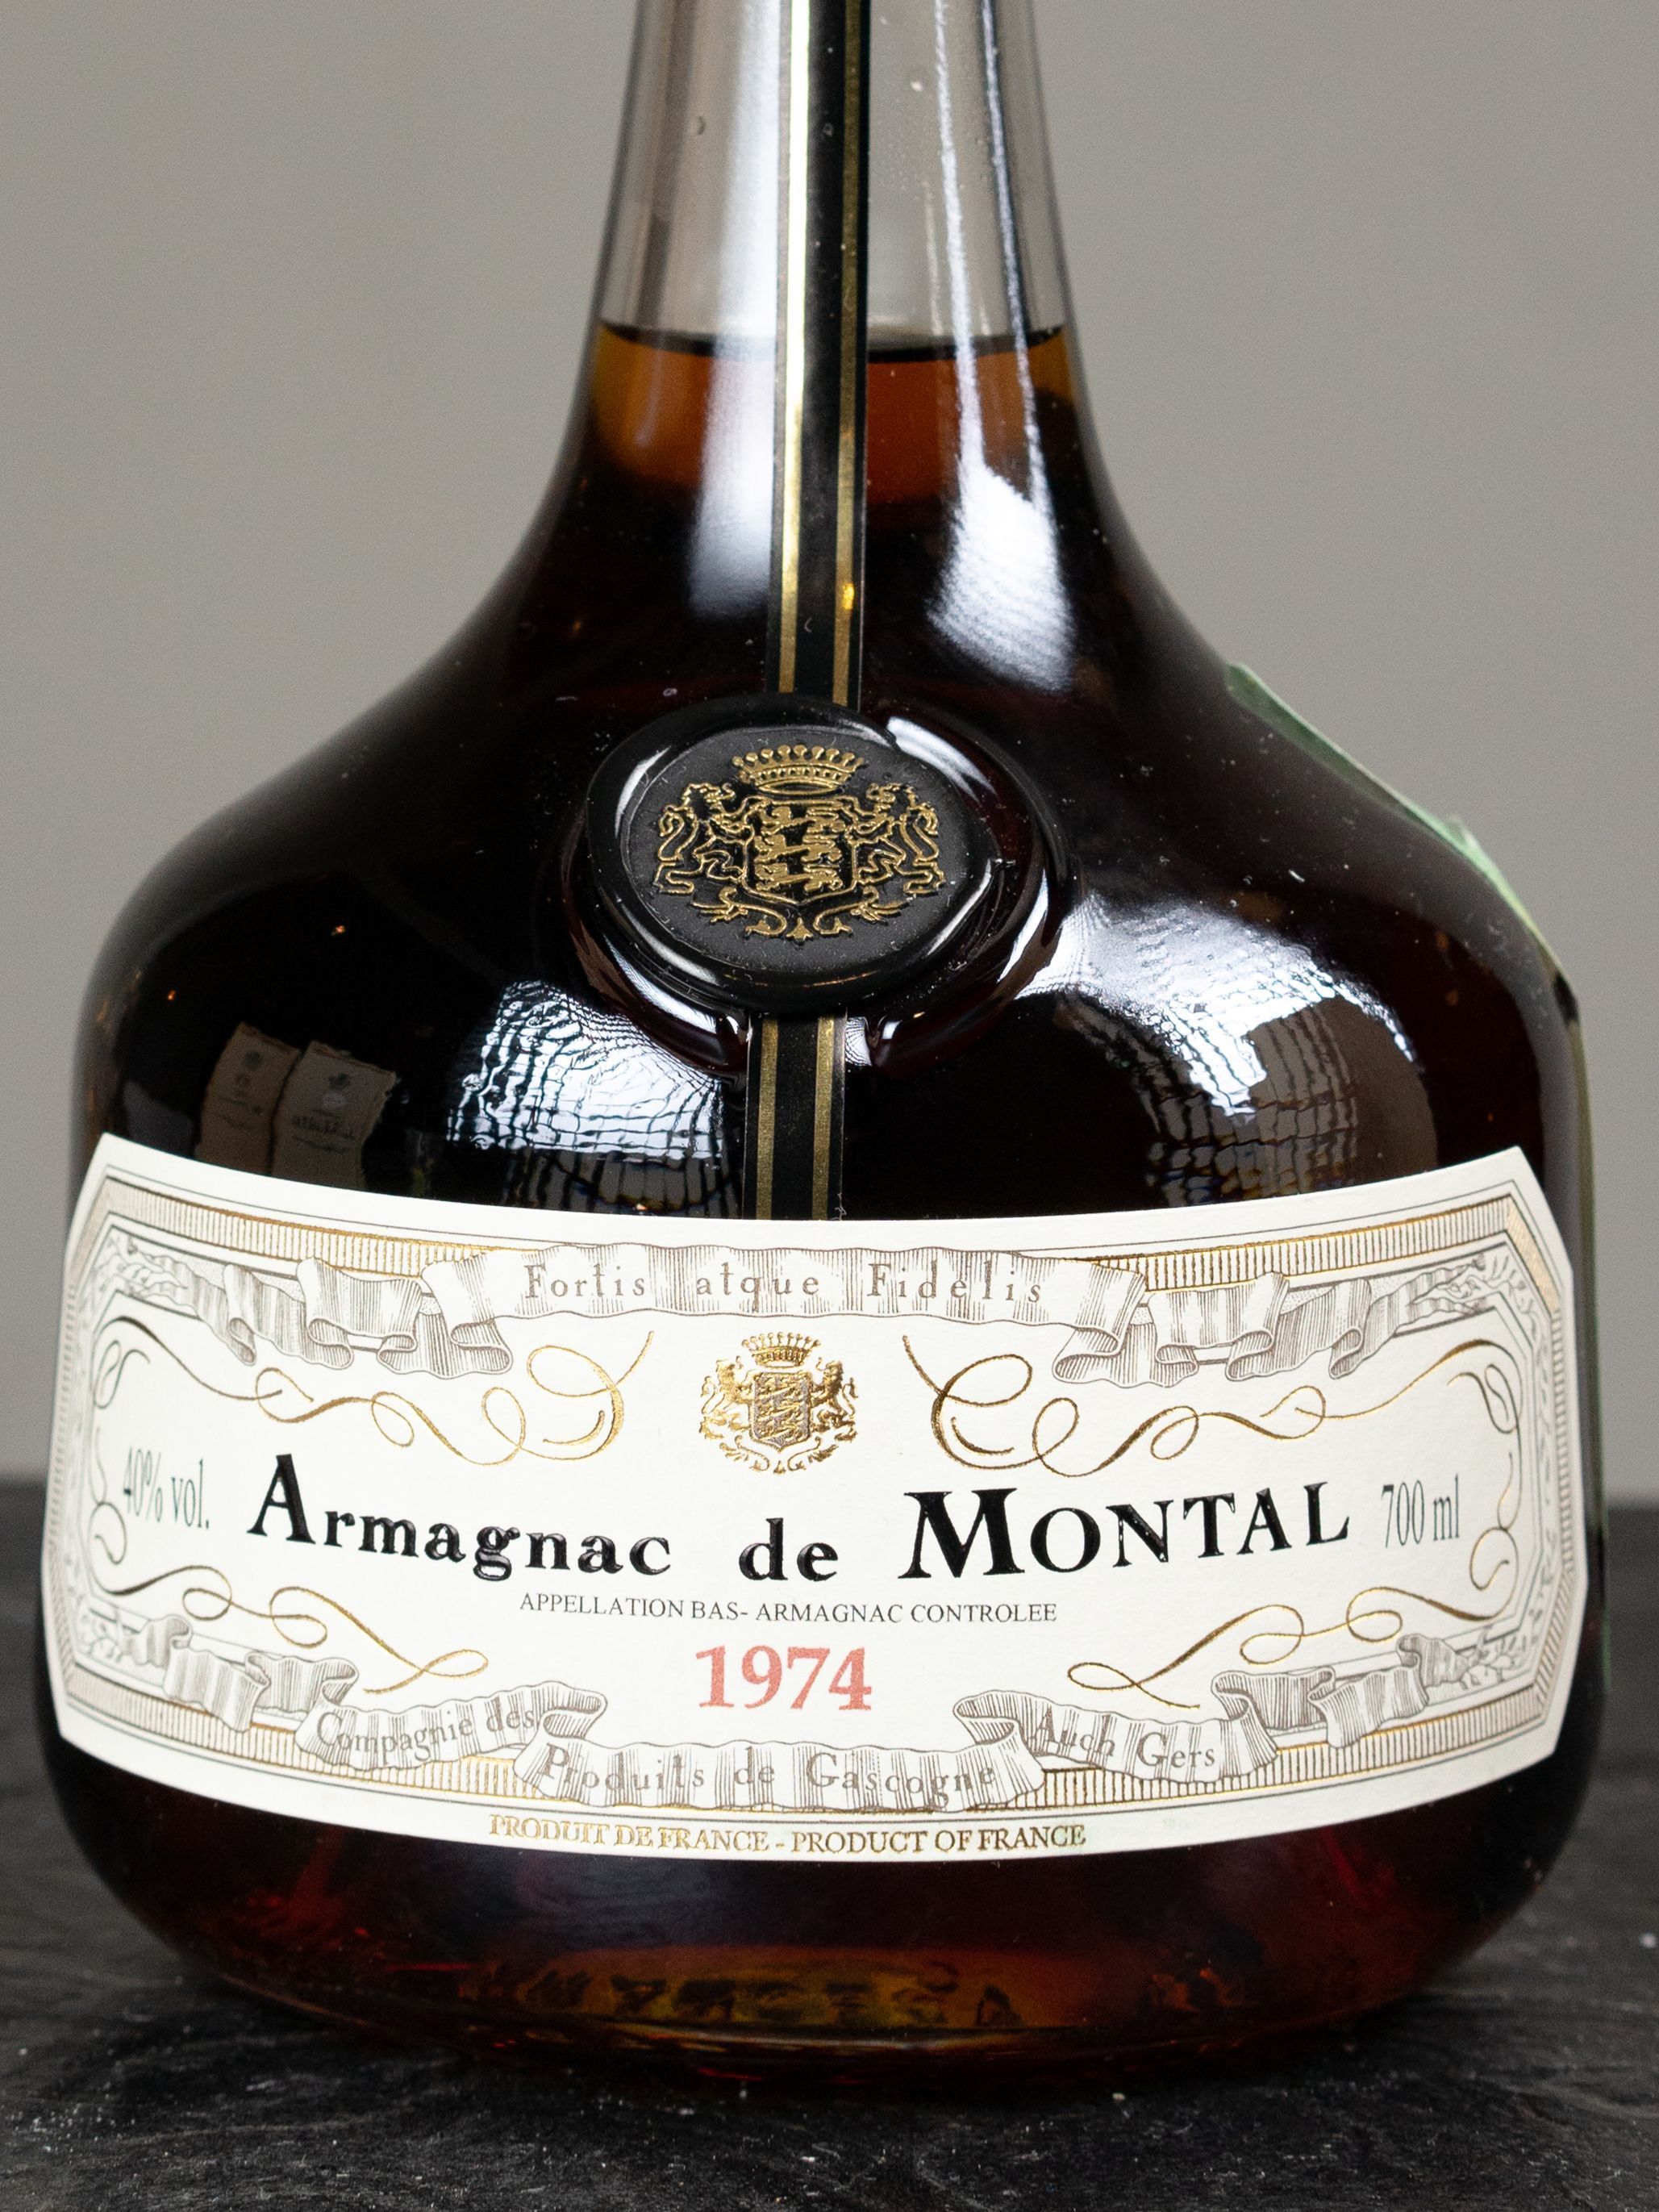 Арманьяк Armagnac de Montal 1974 / Арманьяк де Монталь 1974